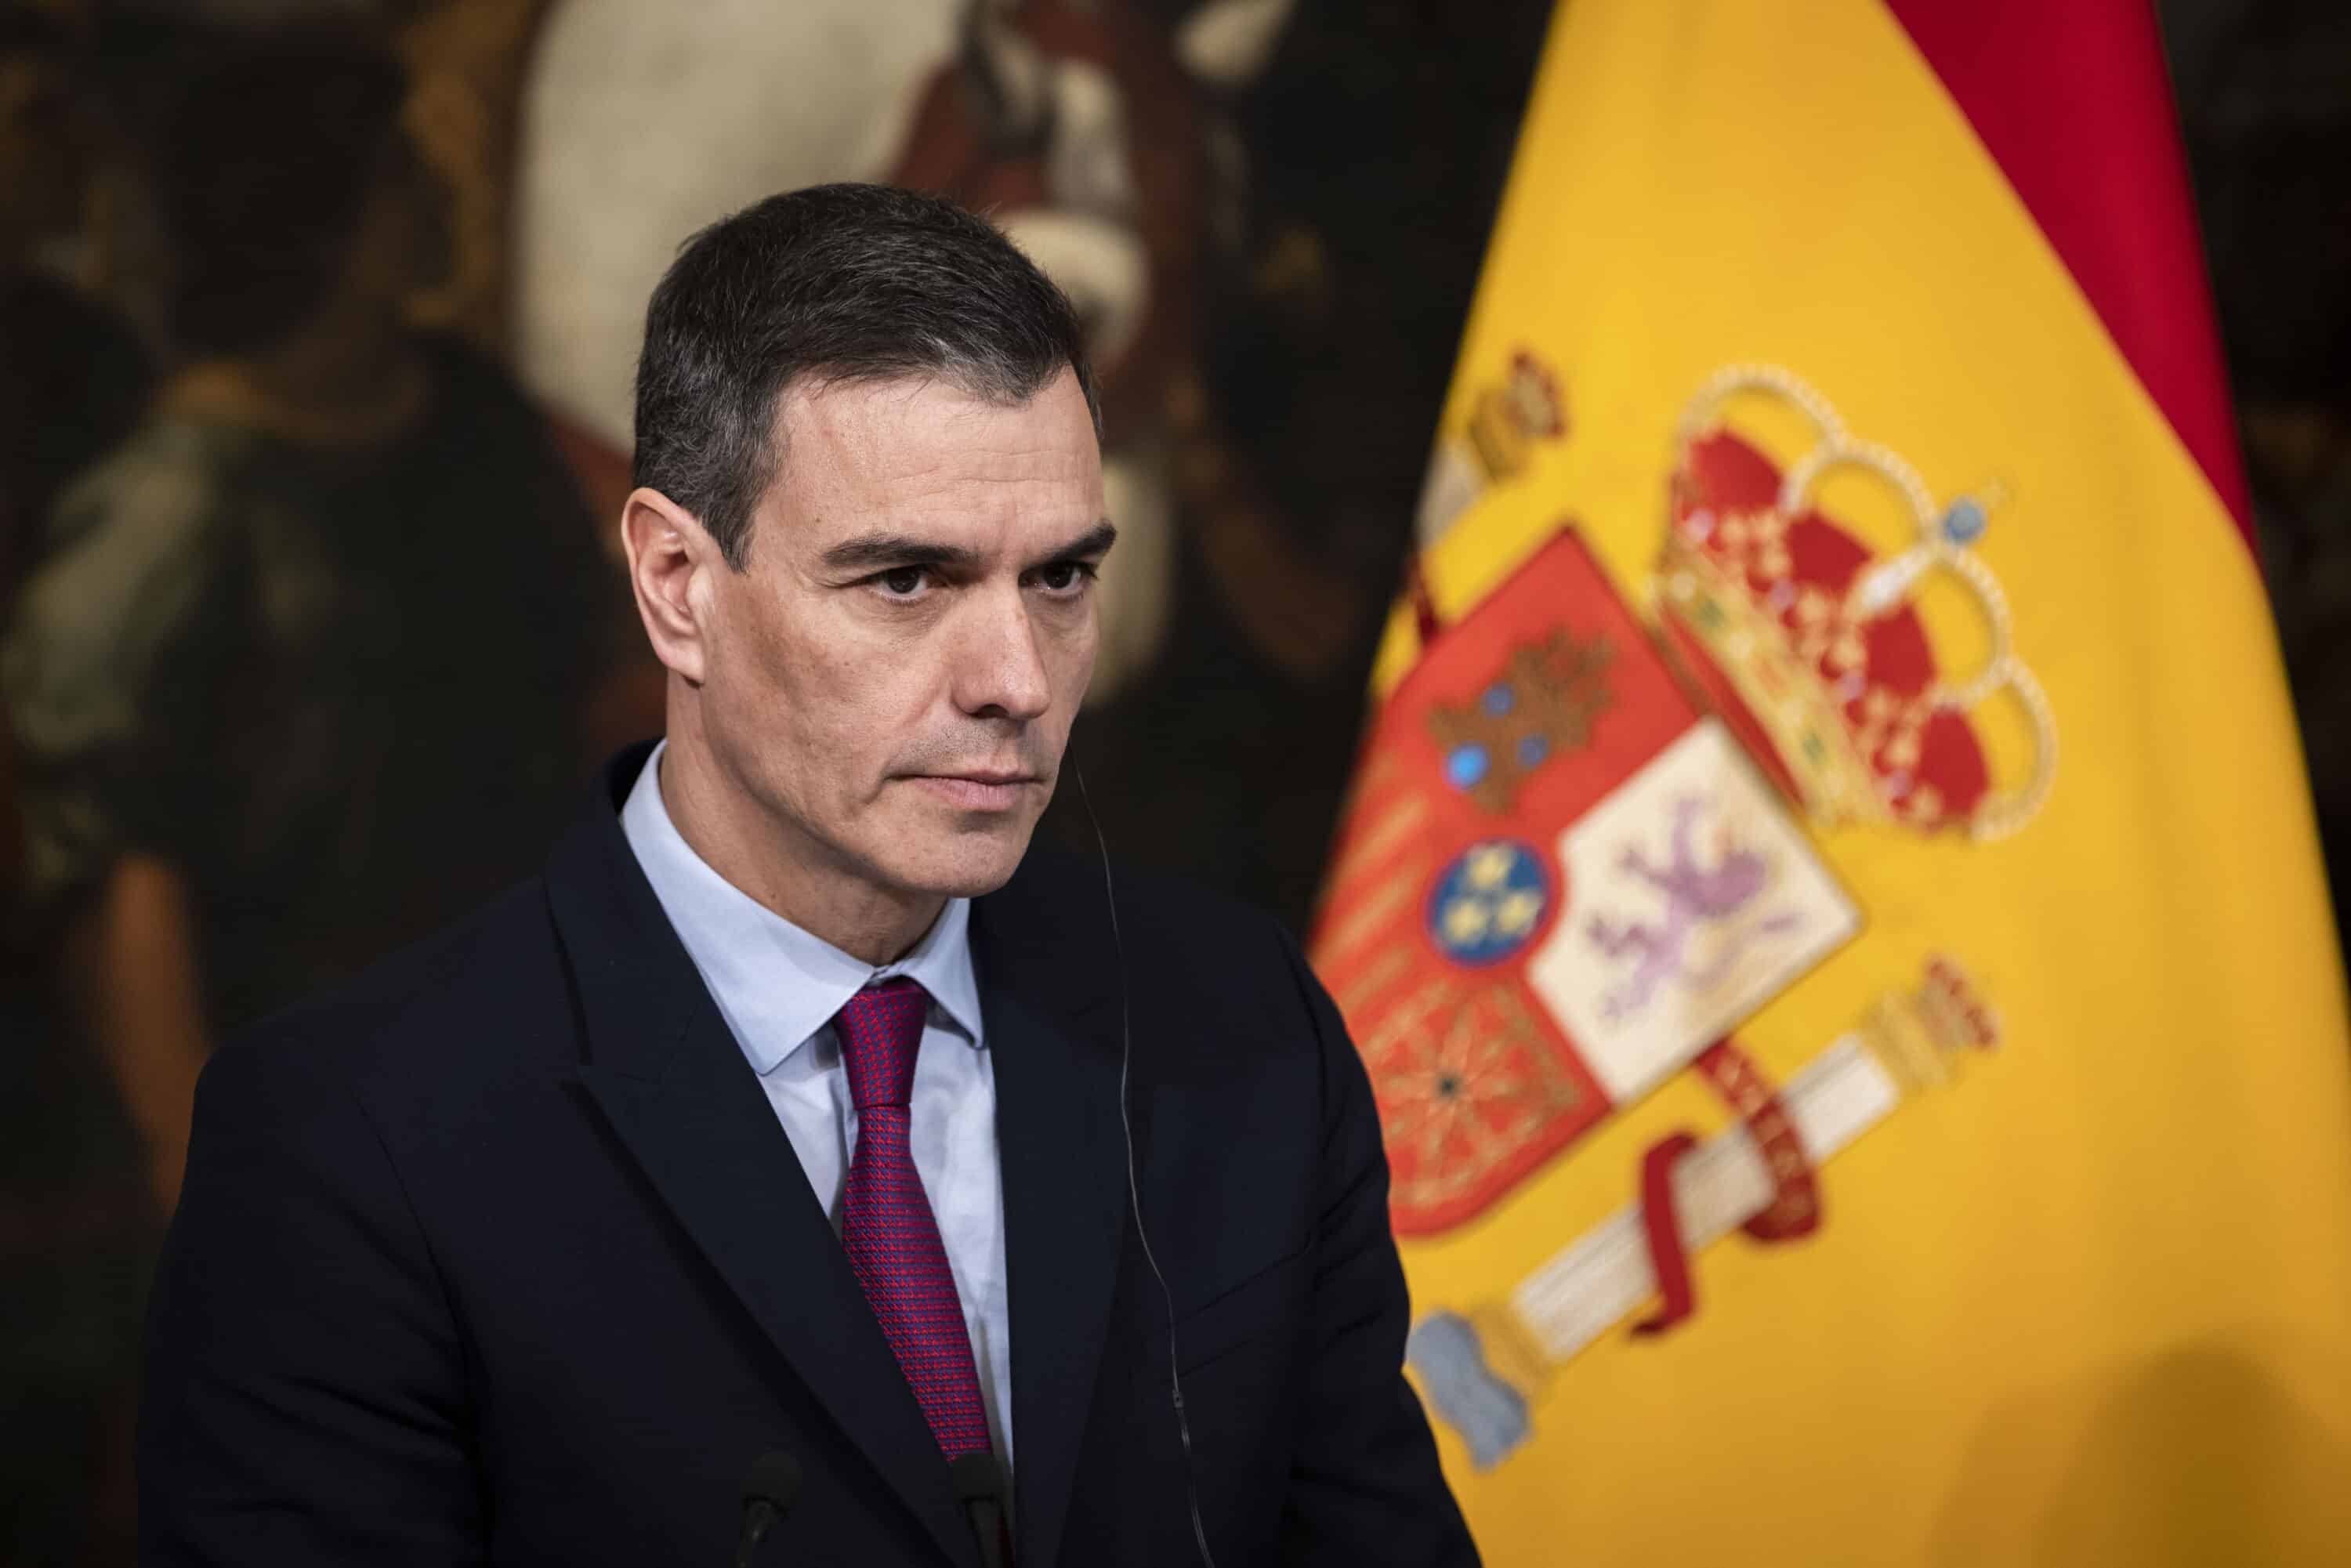 Amministrative amare per la sinistra spagnola. Dopo la débâcle elettorale dei socialisti, il premier Sanchez si è dimesso